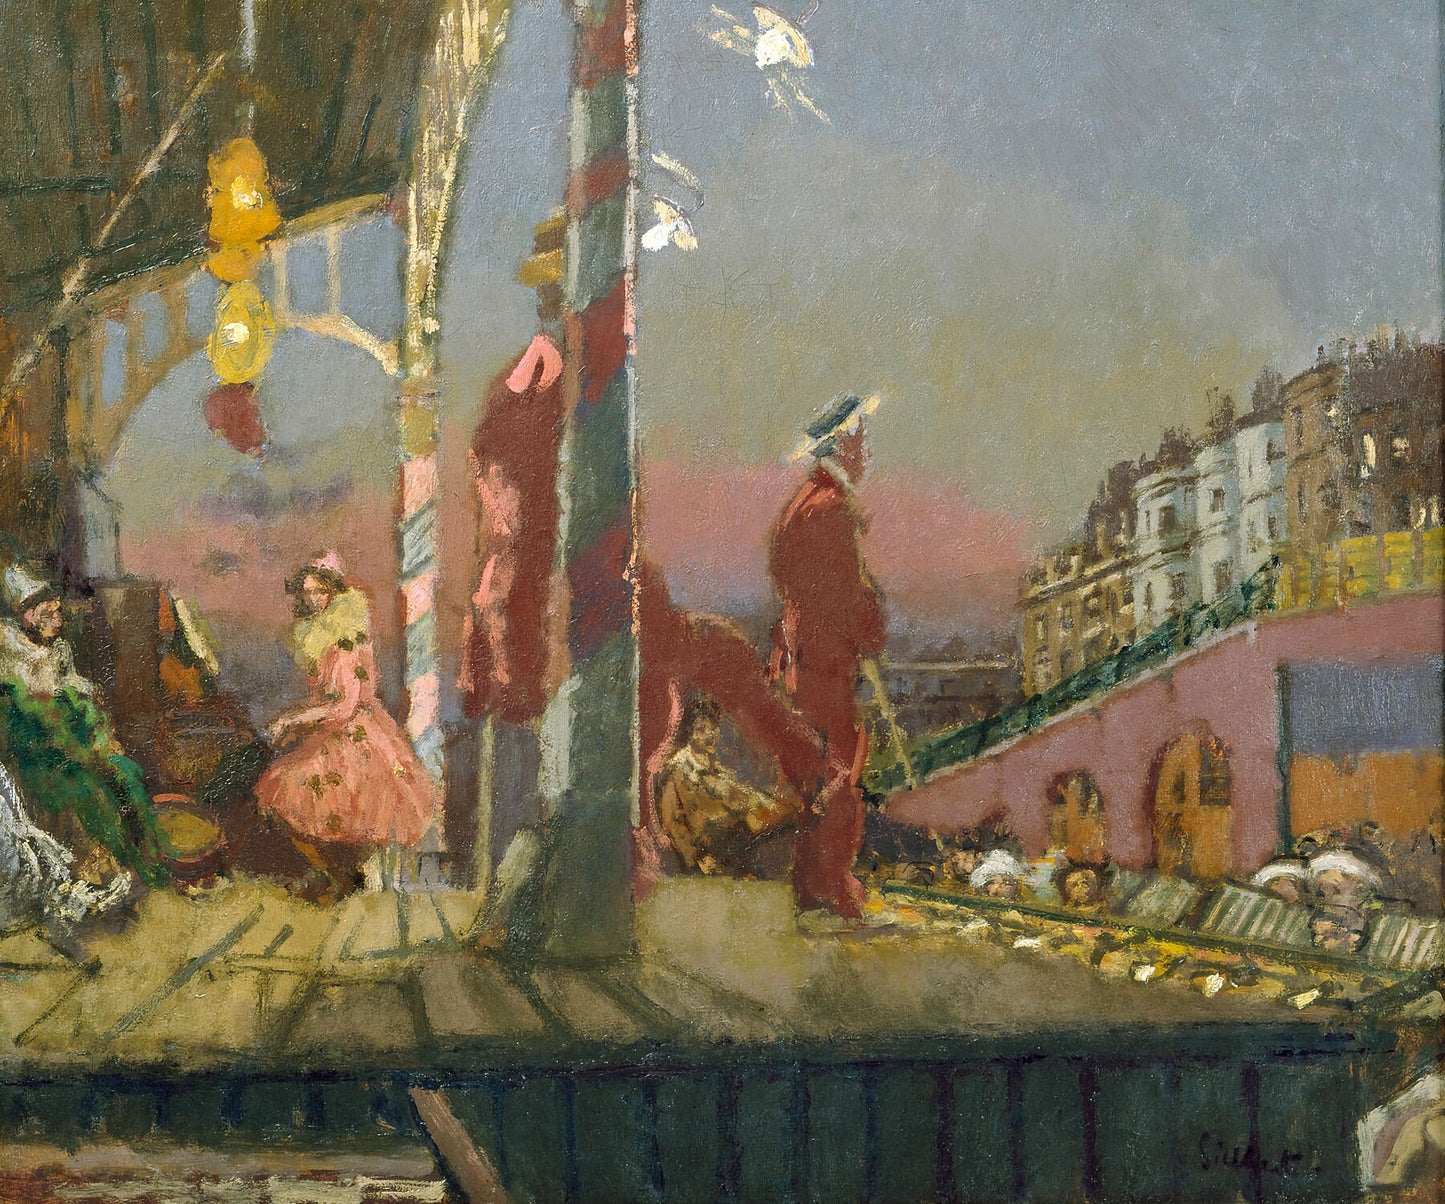 Brighton Pierrots by Walter Sickert - 1915